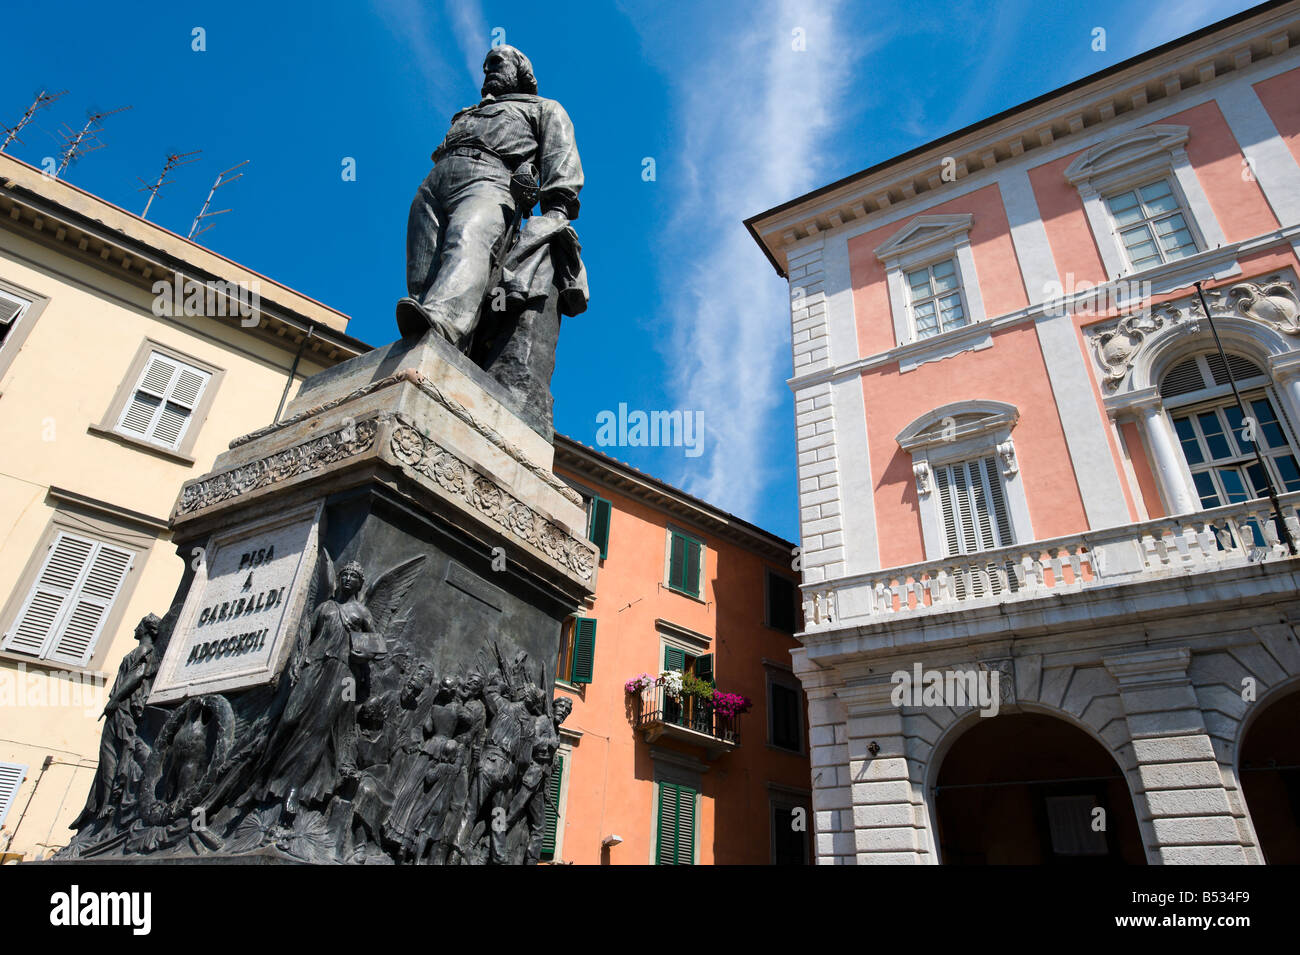 Statue of Giuseppe Garibaldi, Piazza Garibaldi, Pisa, Tuscany, Italy Stock Photo